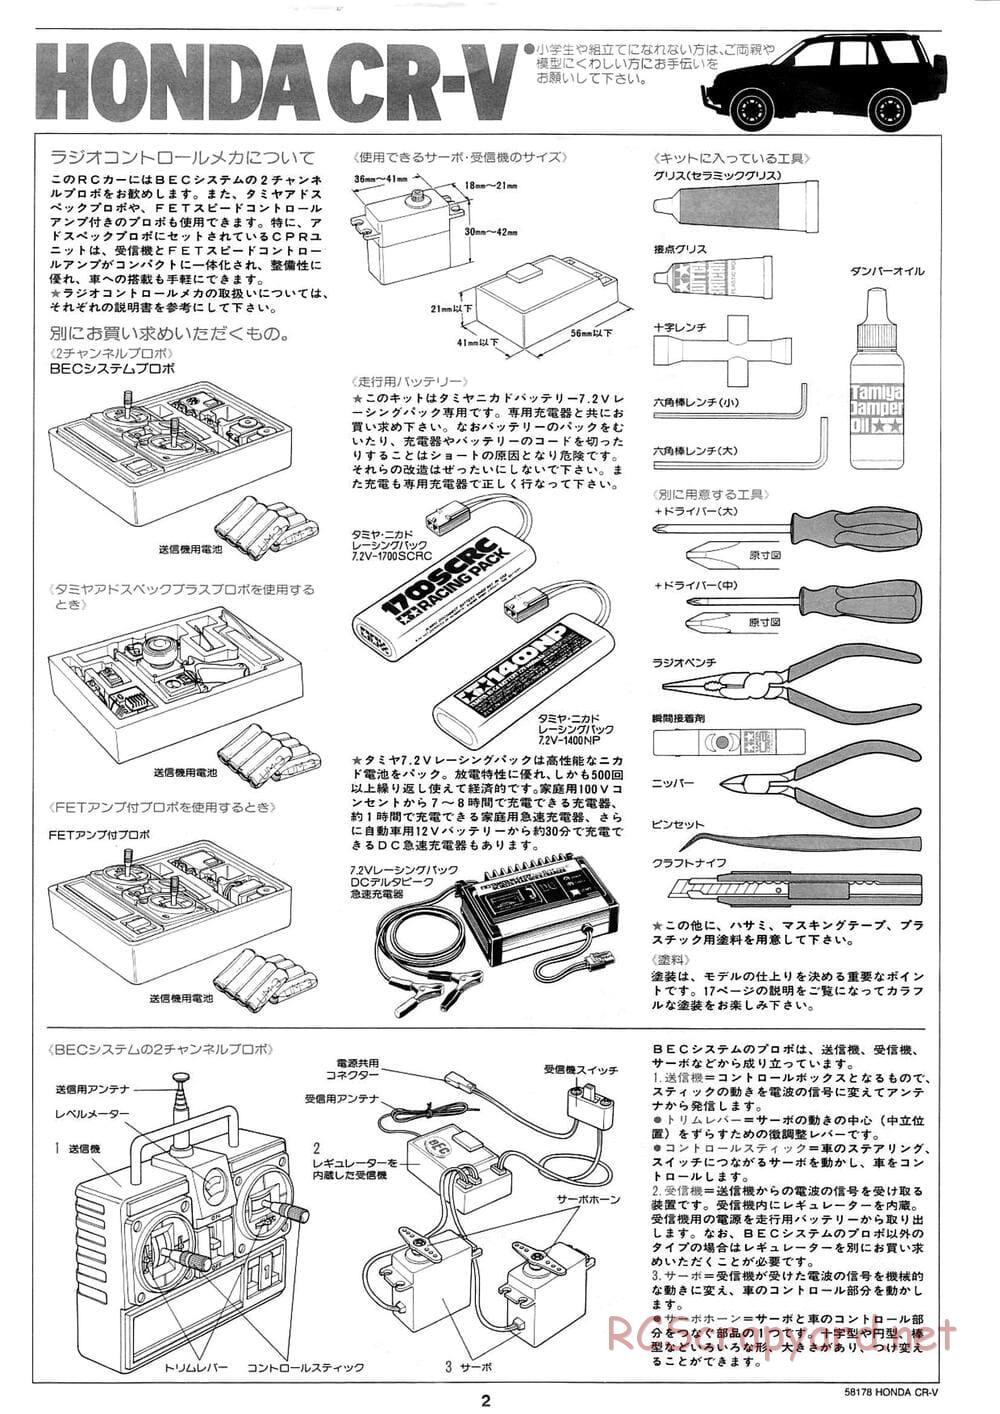 Tamiya - Honda CR-V - CC-01 Chassis - Manual - Page 2